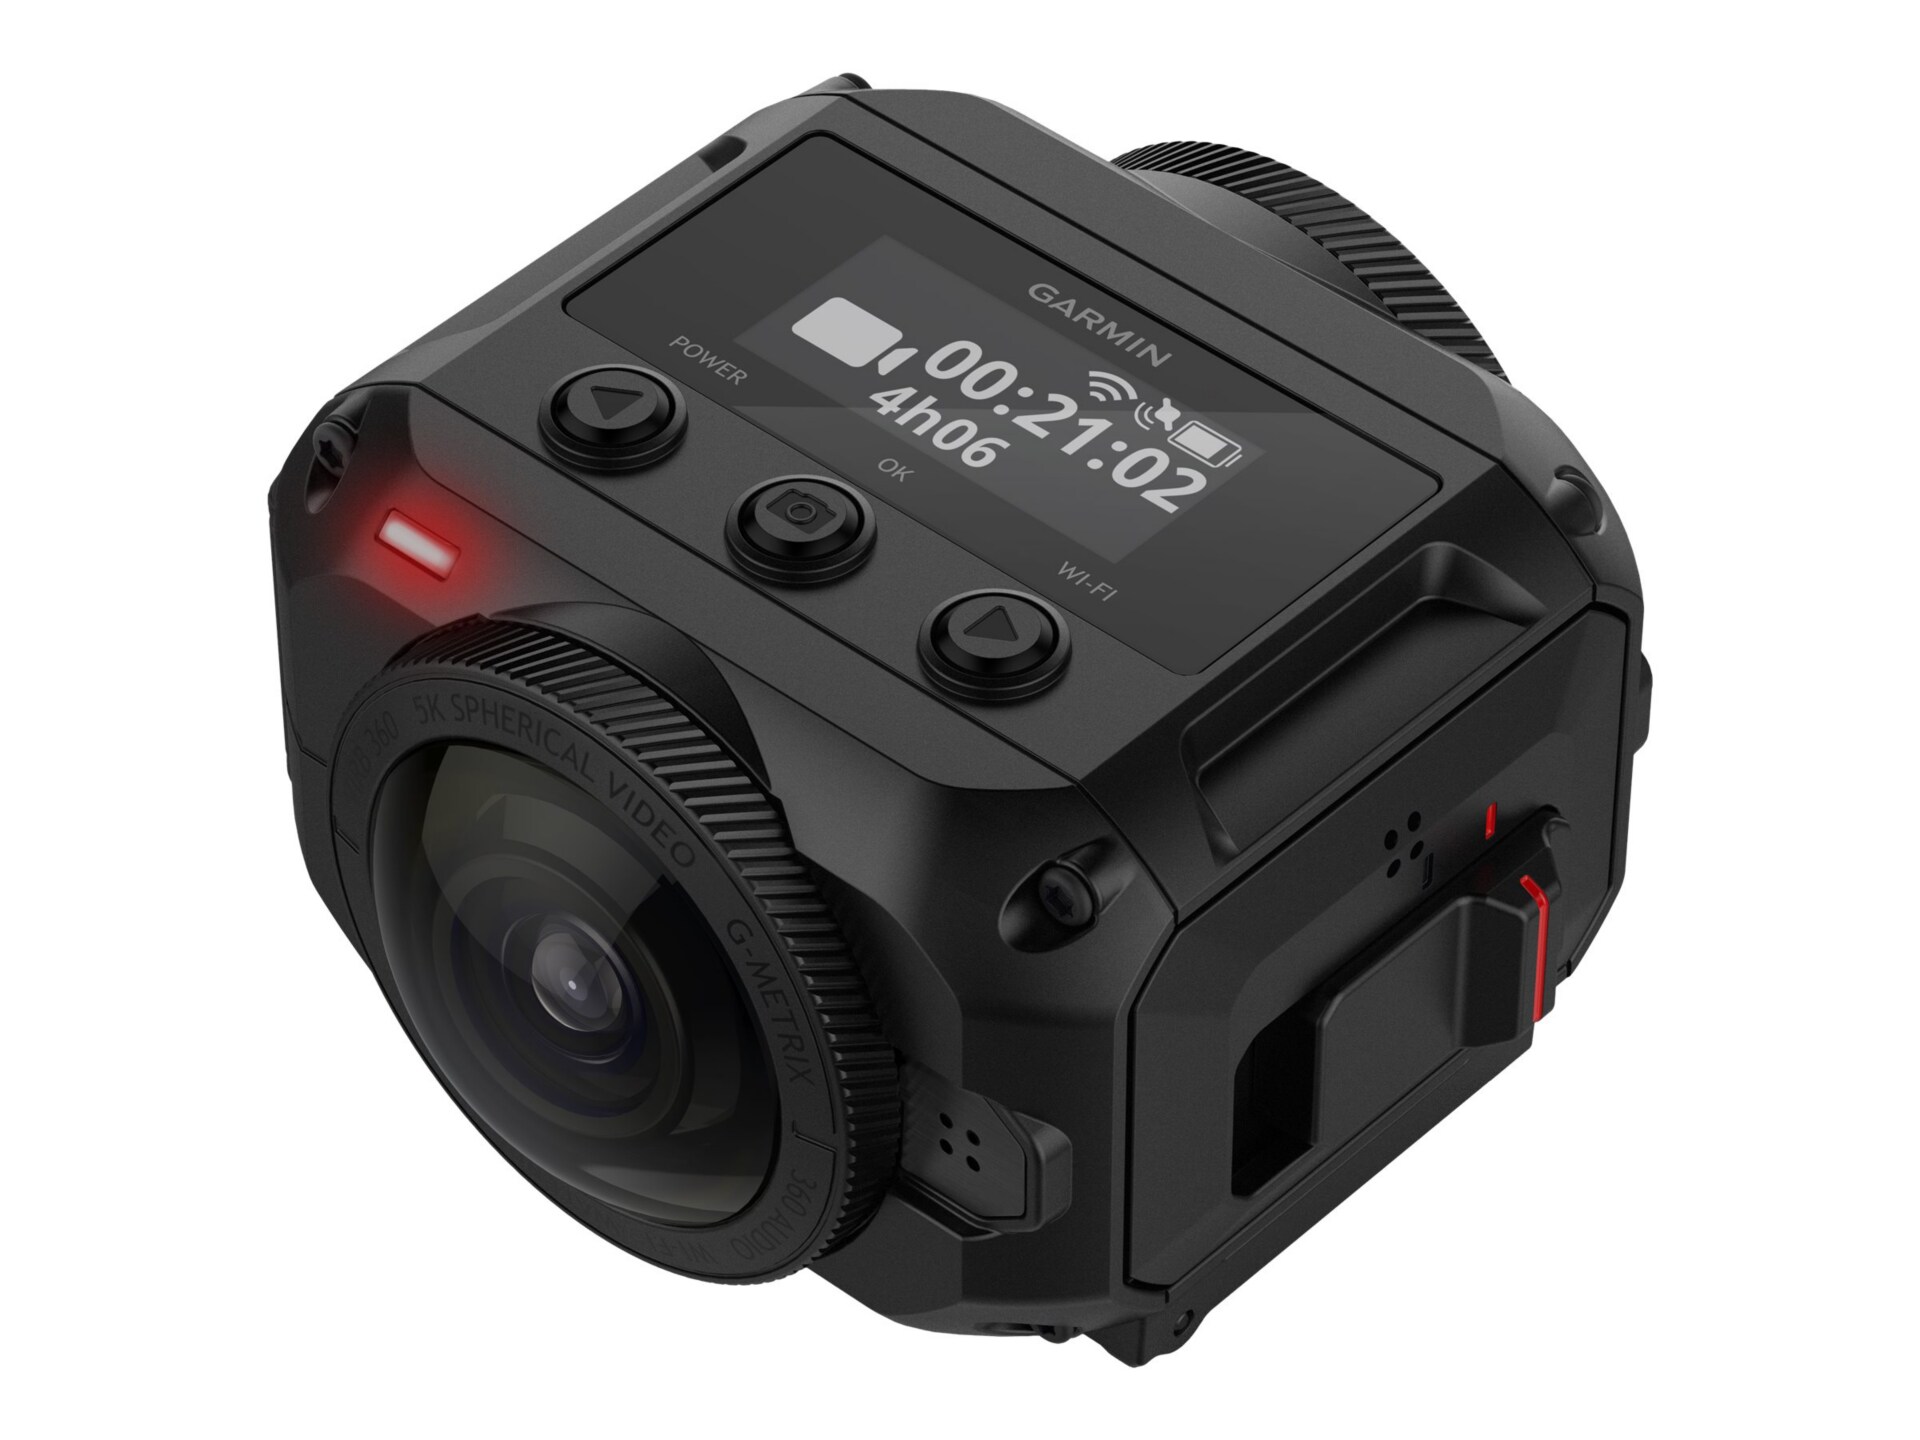 Garmin VIRB 360 - action camera